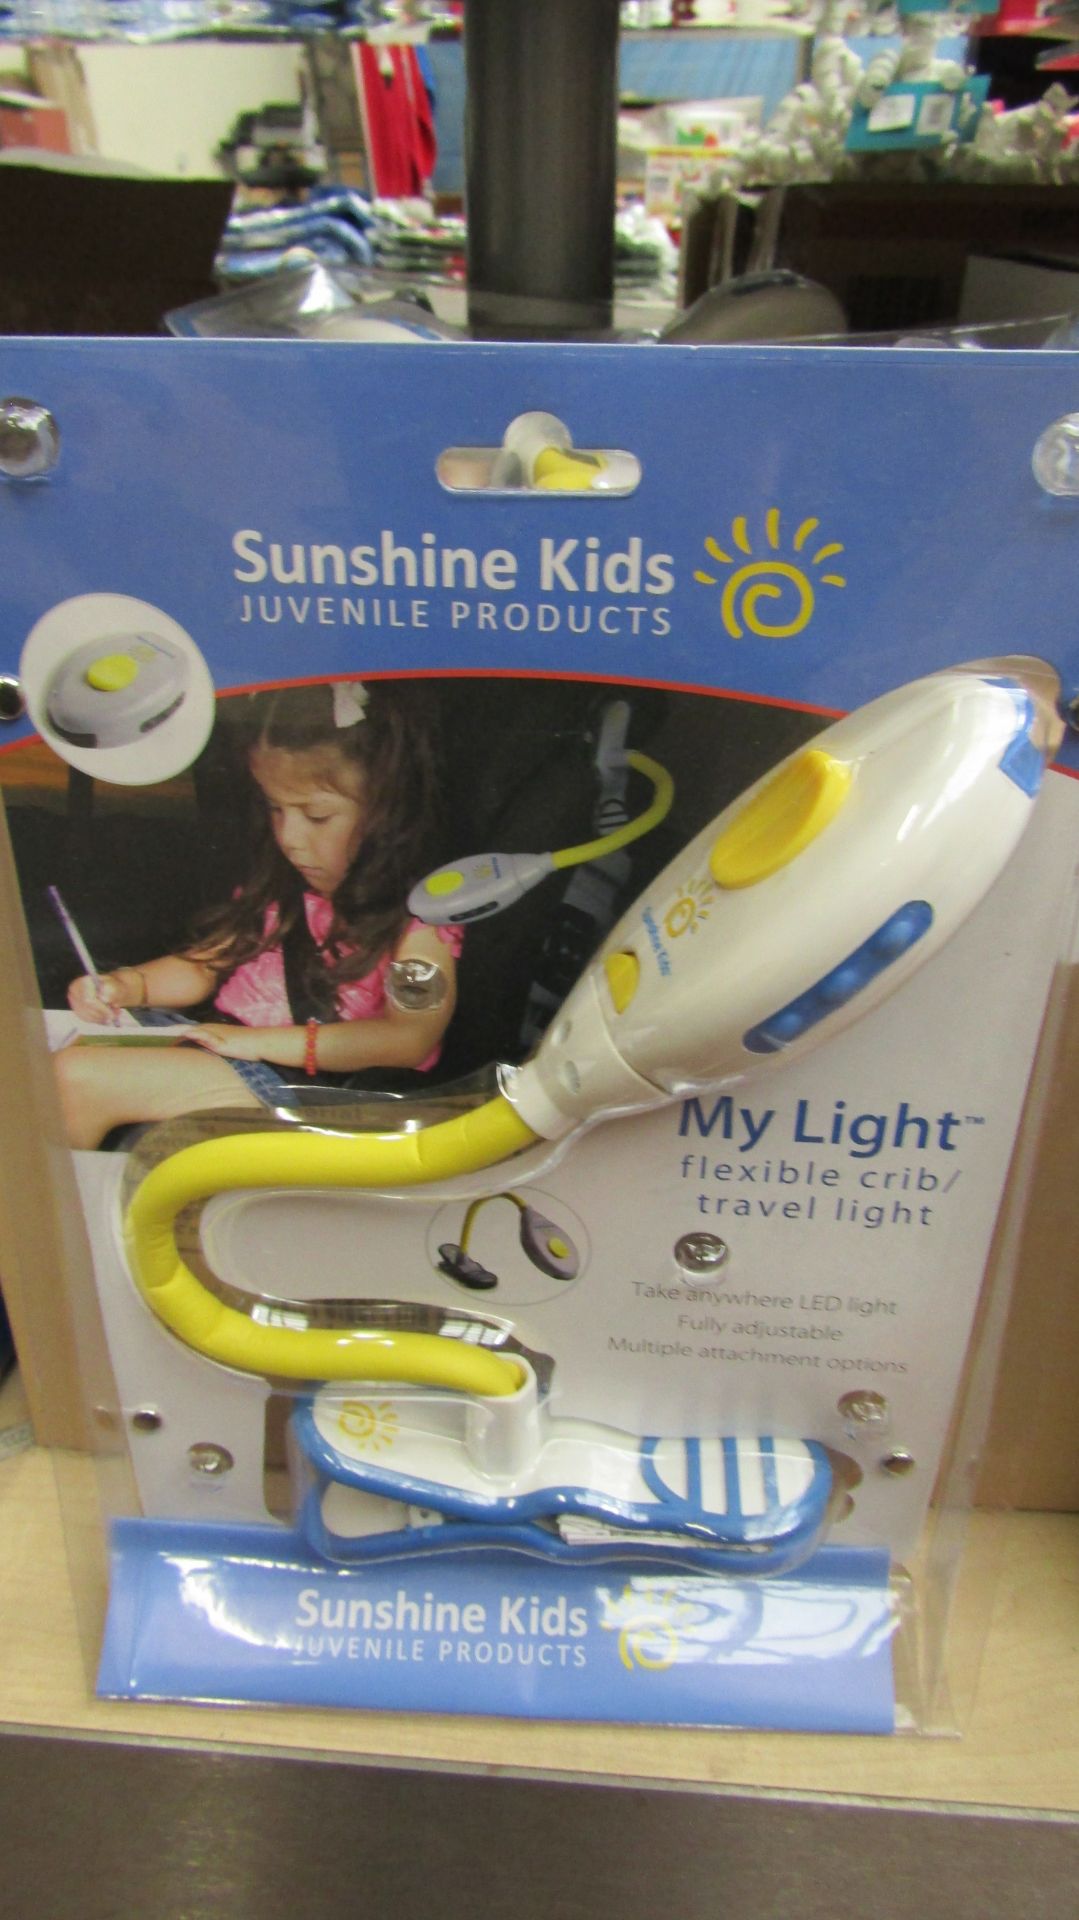 3x Sunshine Kids, 'my light' flexible crib/travel light, new in packaging.